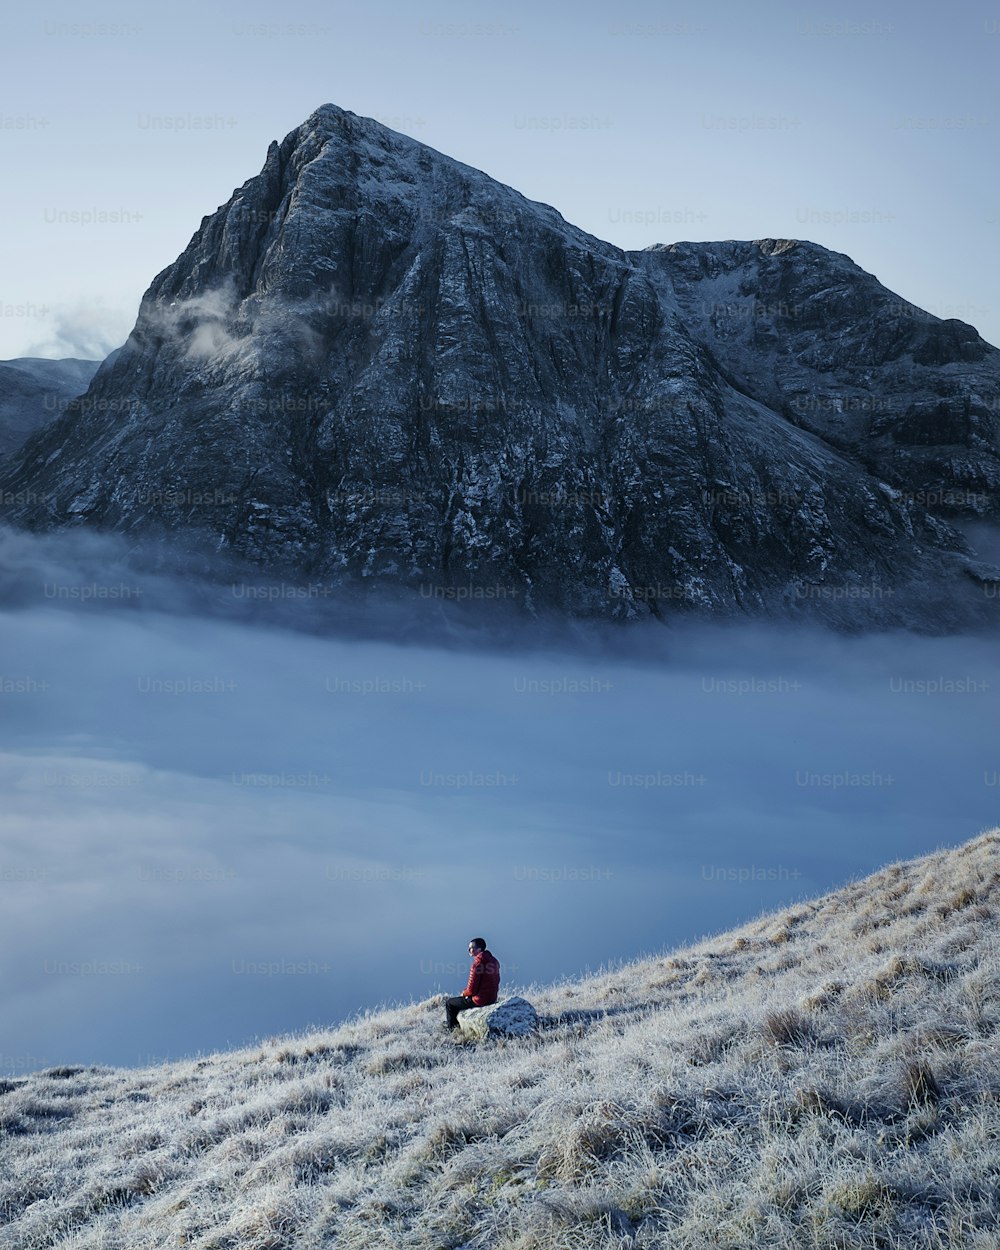 eine Person, die auf einem Hügel sitzt, mit einem Berg im Hintergrund